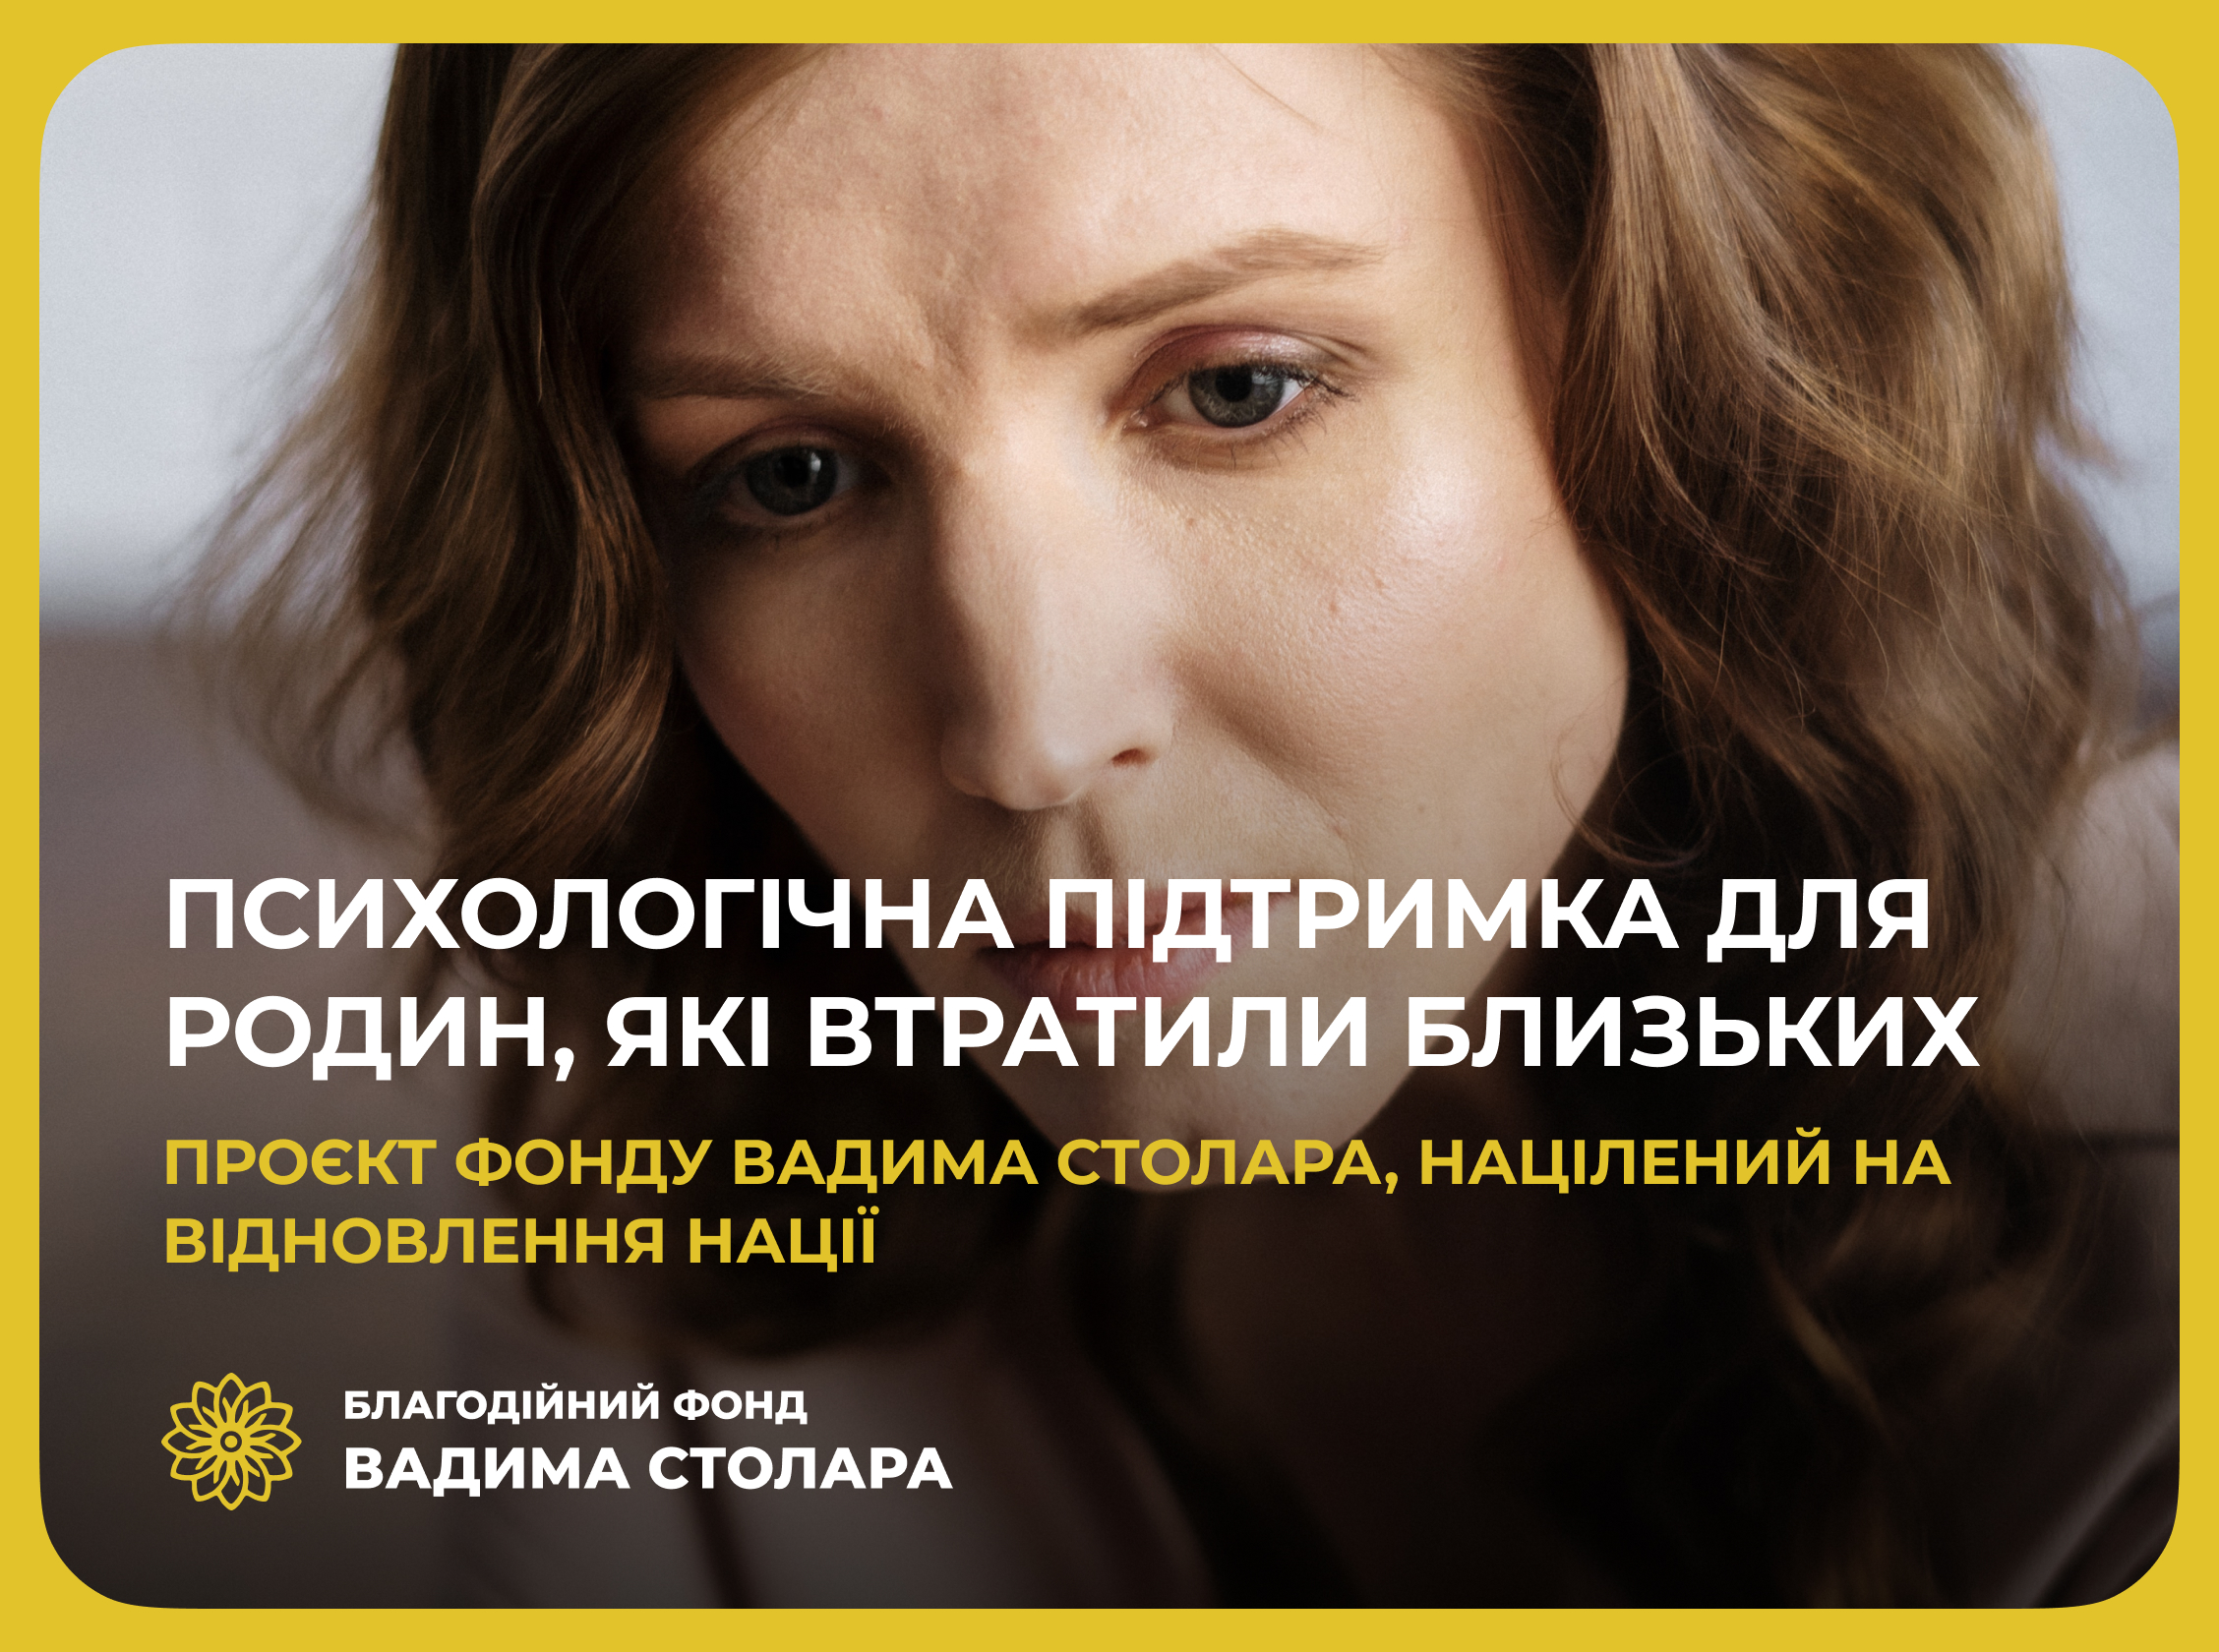 Фондом Вадима Столара реалізується проєкт психологічної підтримки: кому це може бути потрібним - фото 2